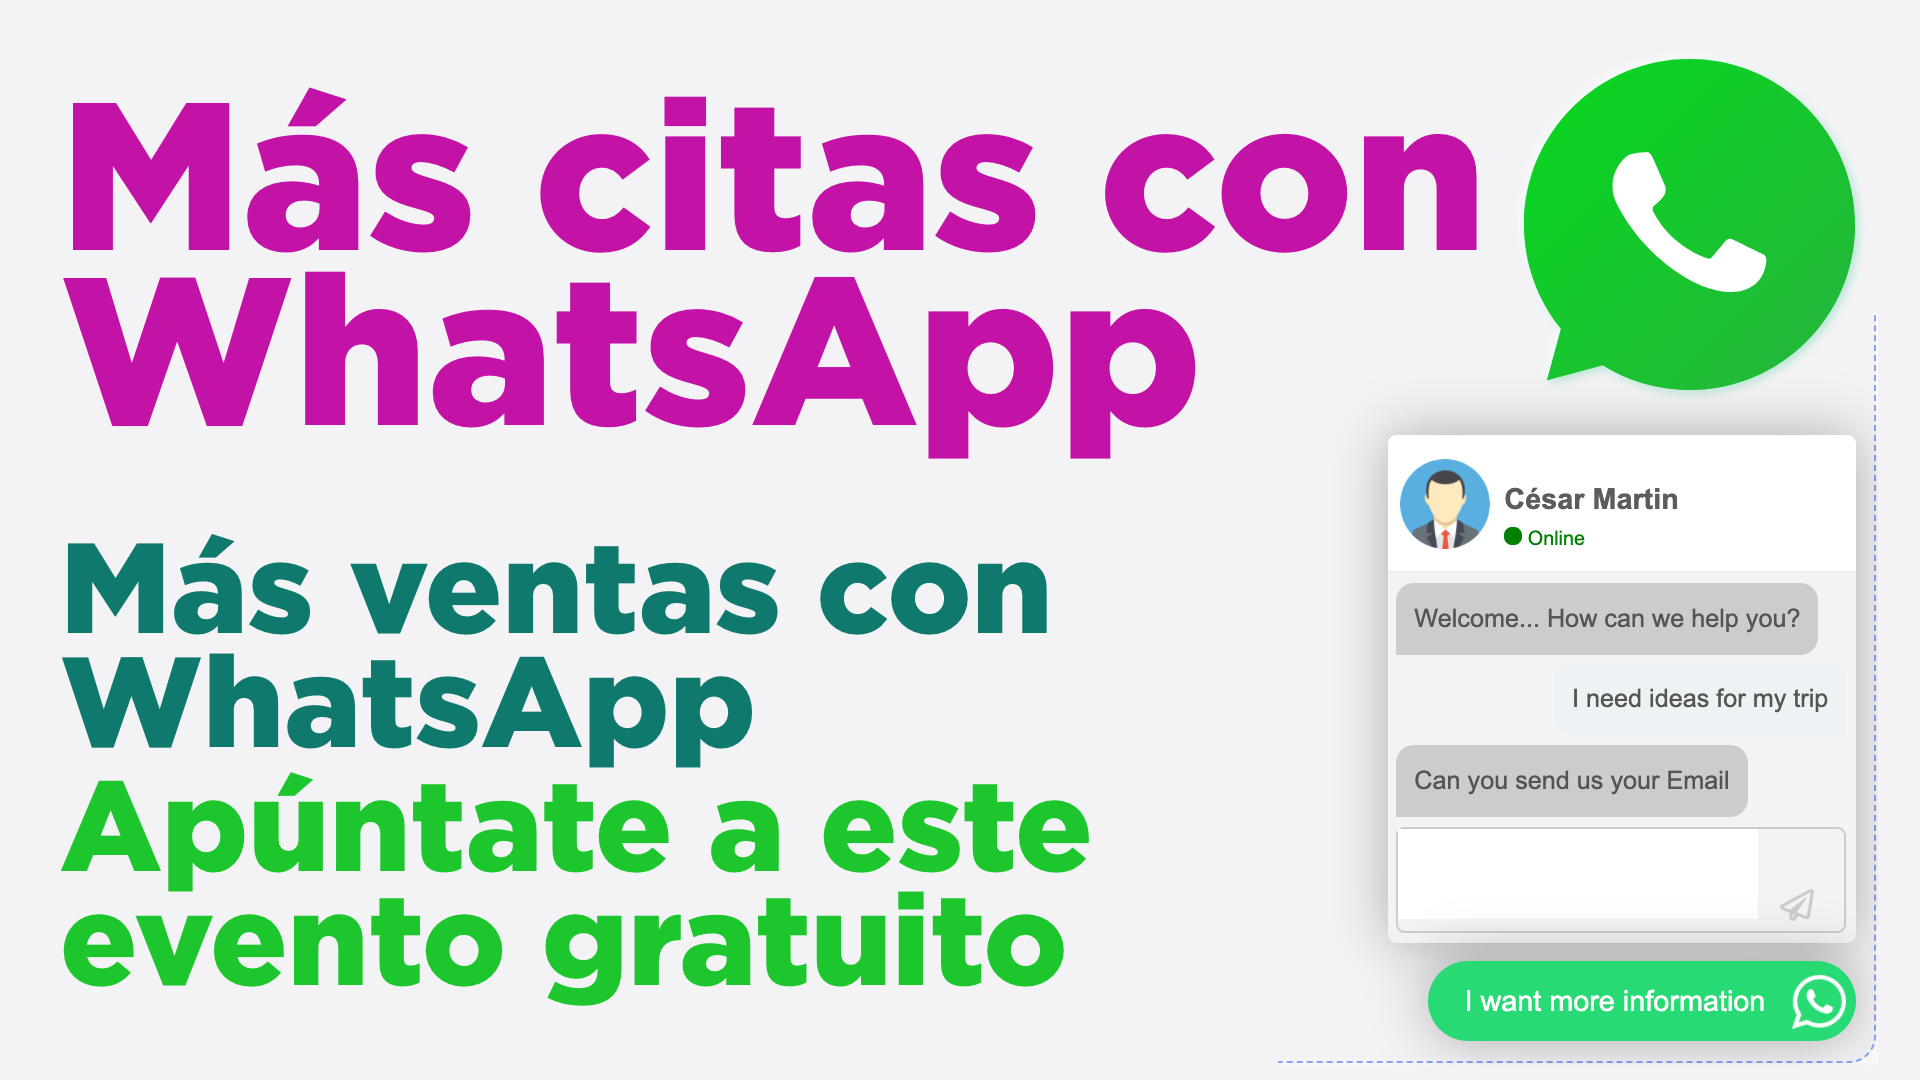 Aprender a vender con WhatsApp: 4 eventos gratuitos con ChatWith.io